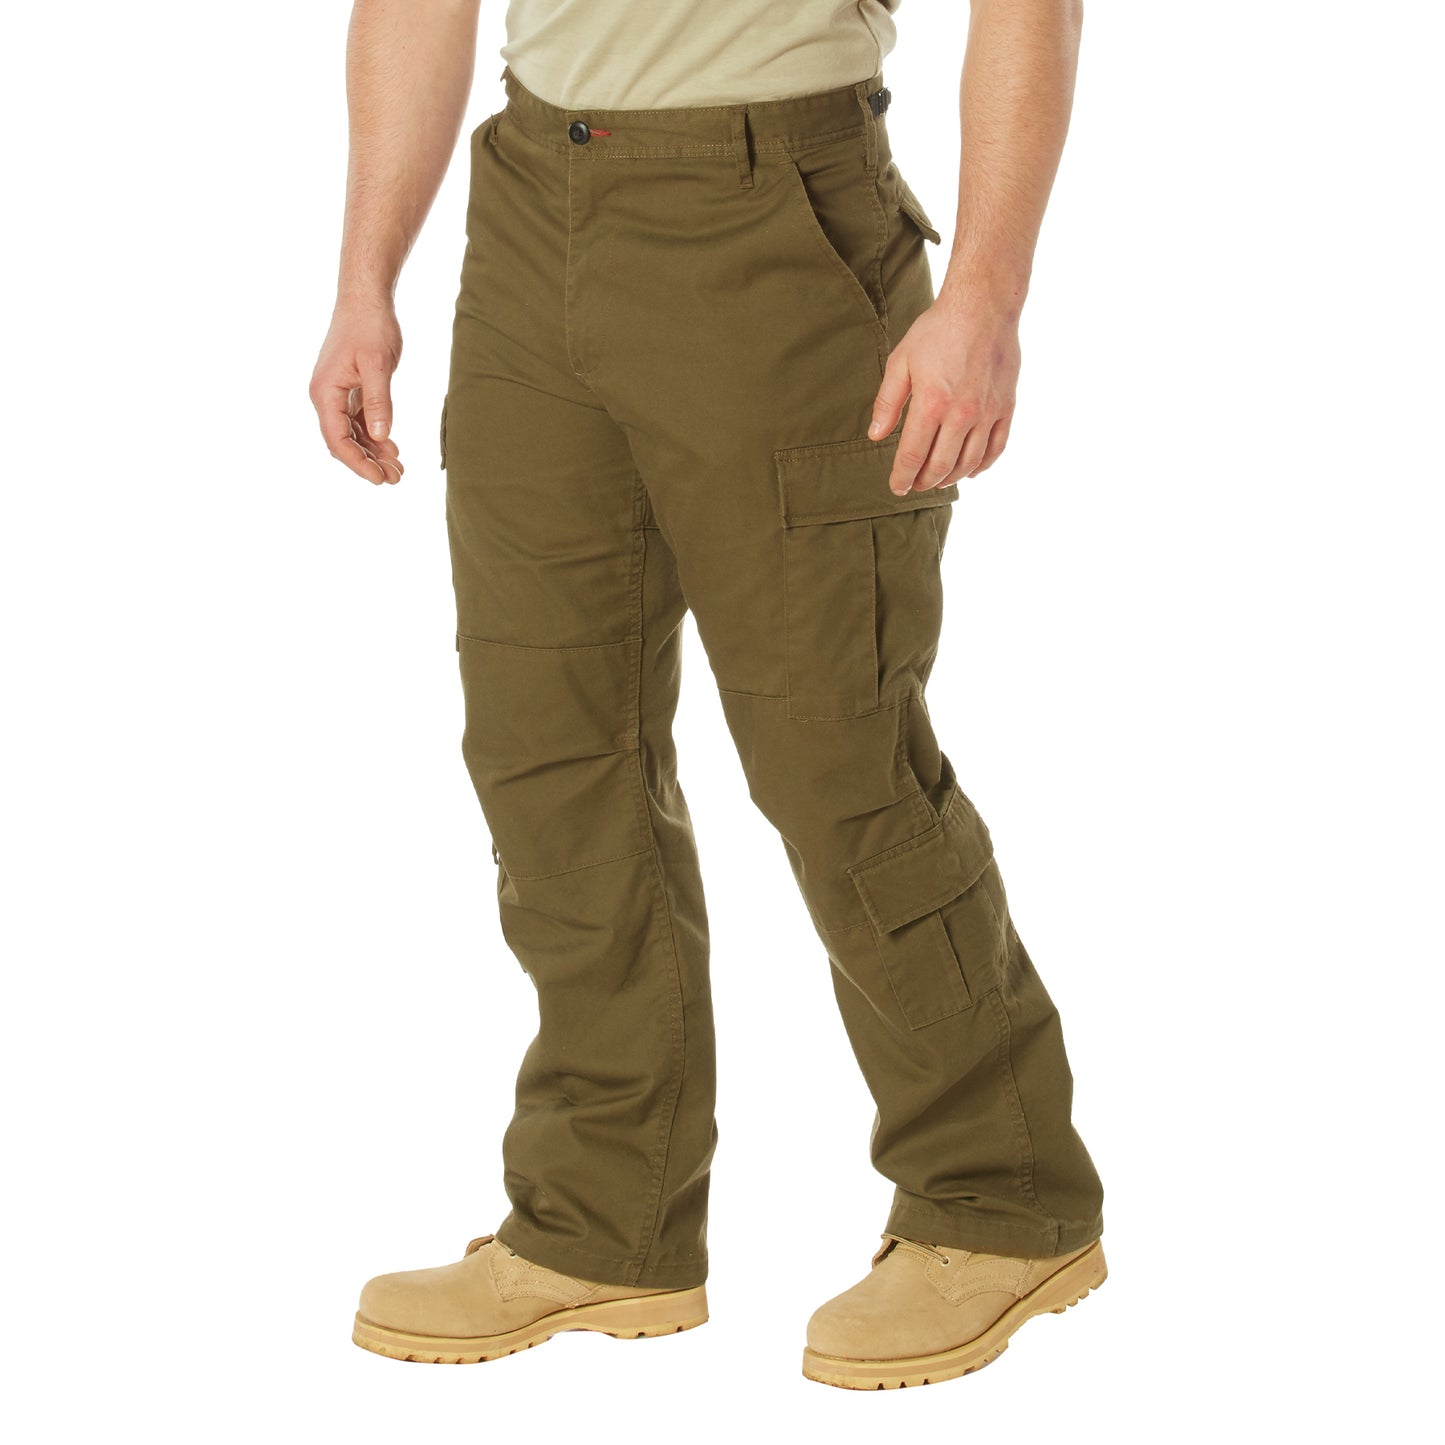 Vintage Paratrooper Cargo Fatigue Pants